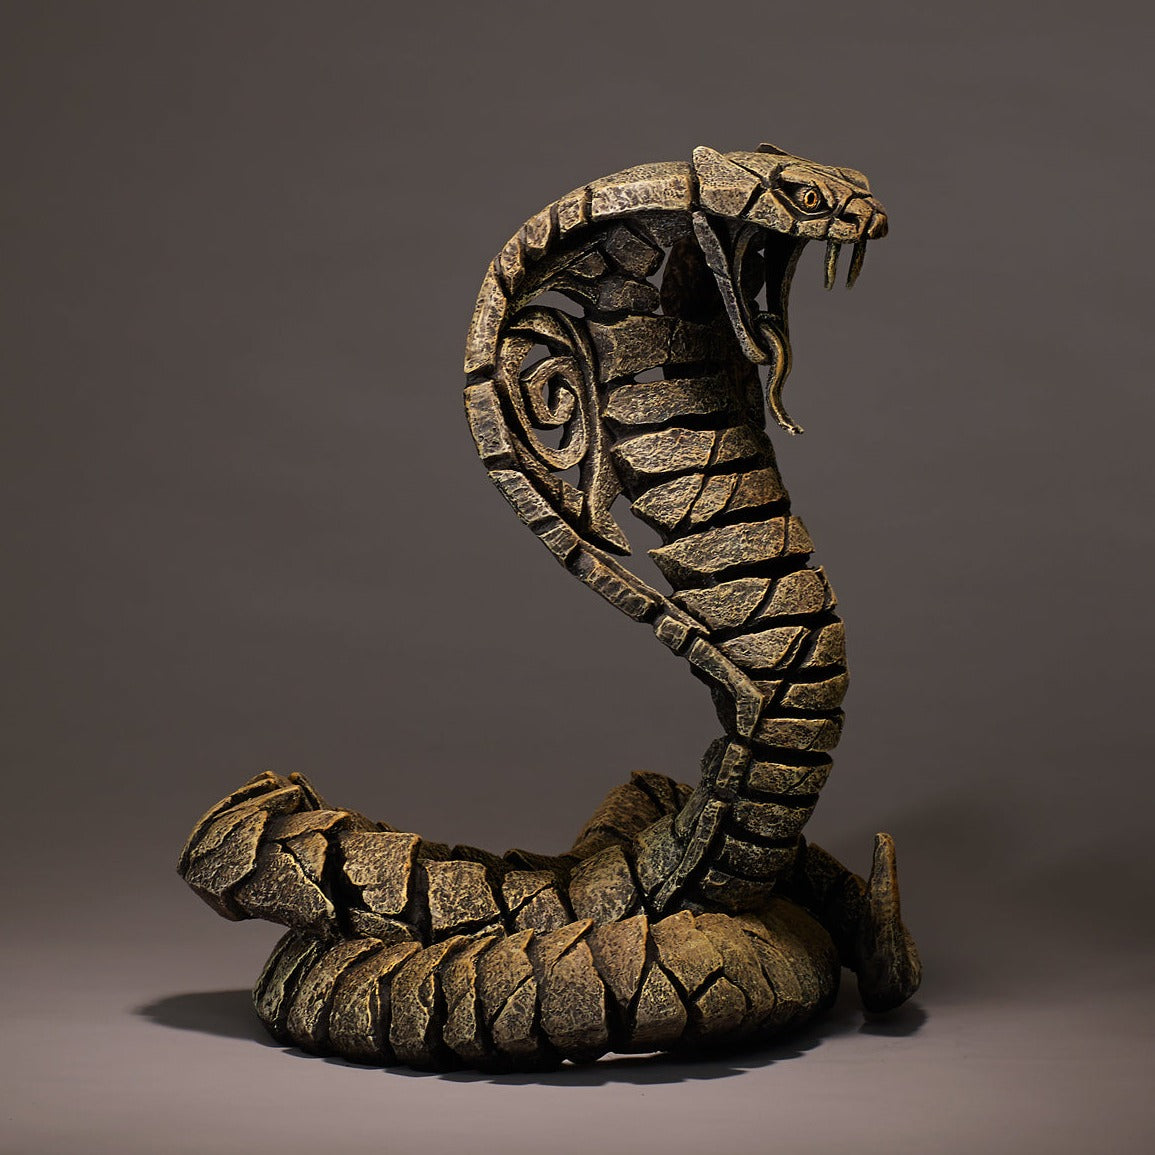 Edge Sculpture Cobra Desert by Matt Buckley